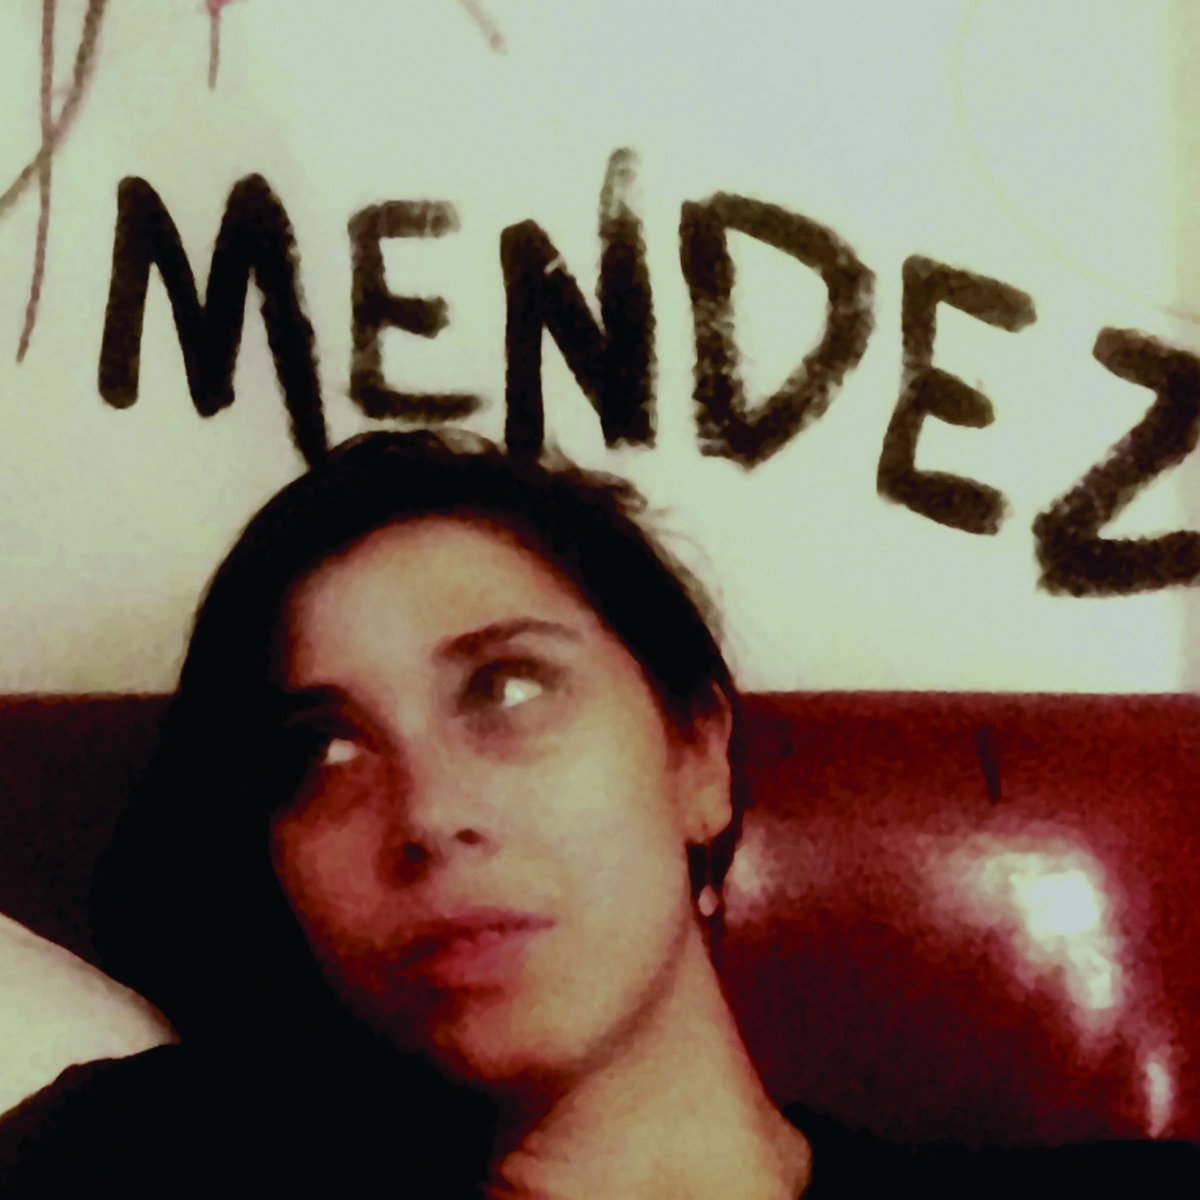 Mendez -/ pic